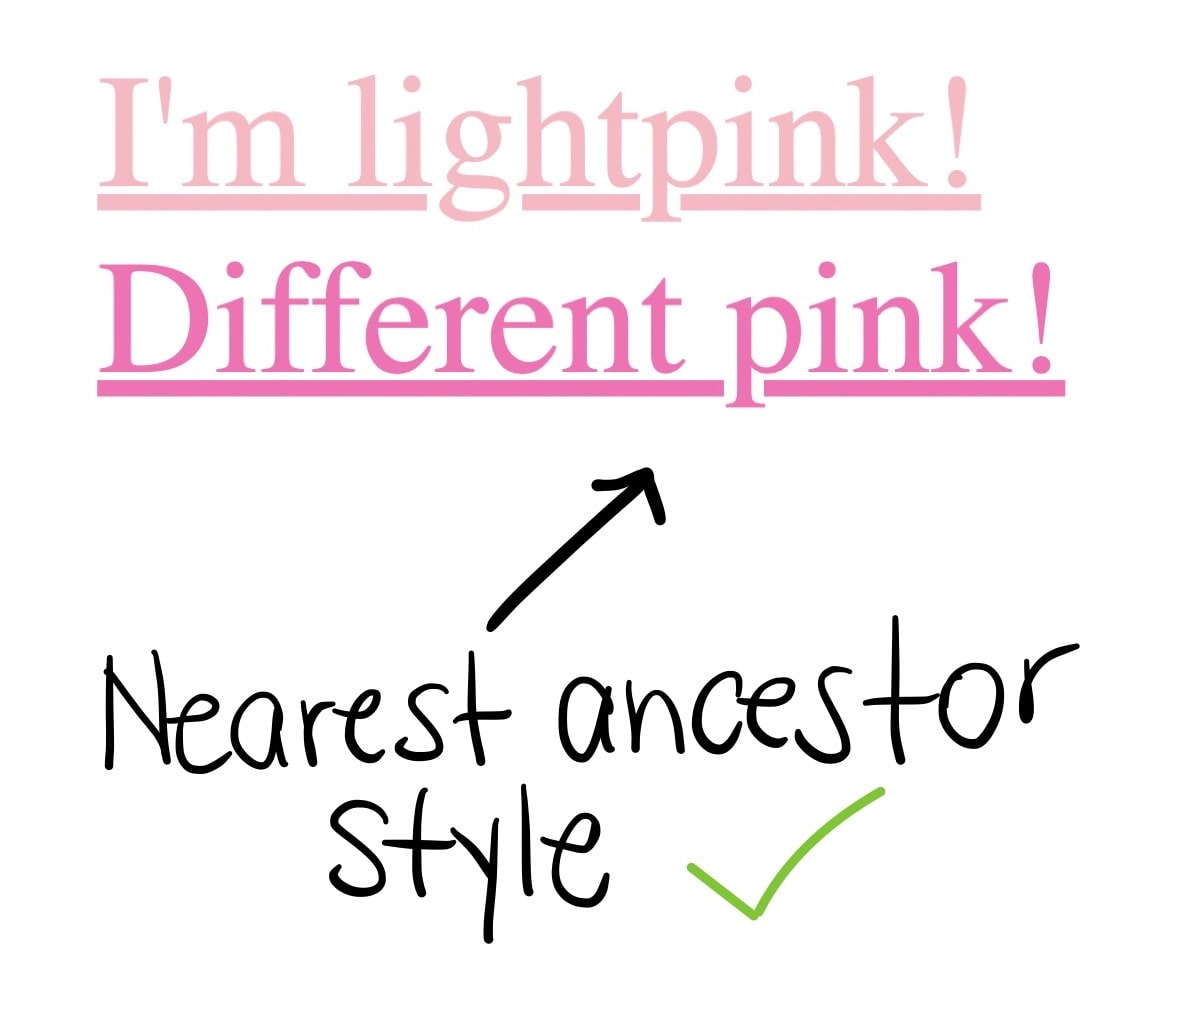 两个链接，第一个是“我是浅粉色！”，第二个是“不同粉色”，第二个链接是深粉色，位于链接文本最近的祖先样式下，旁边有一个绿色对勾标记。